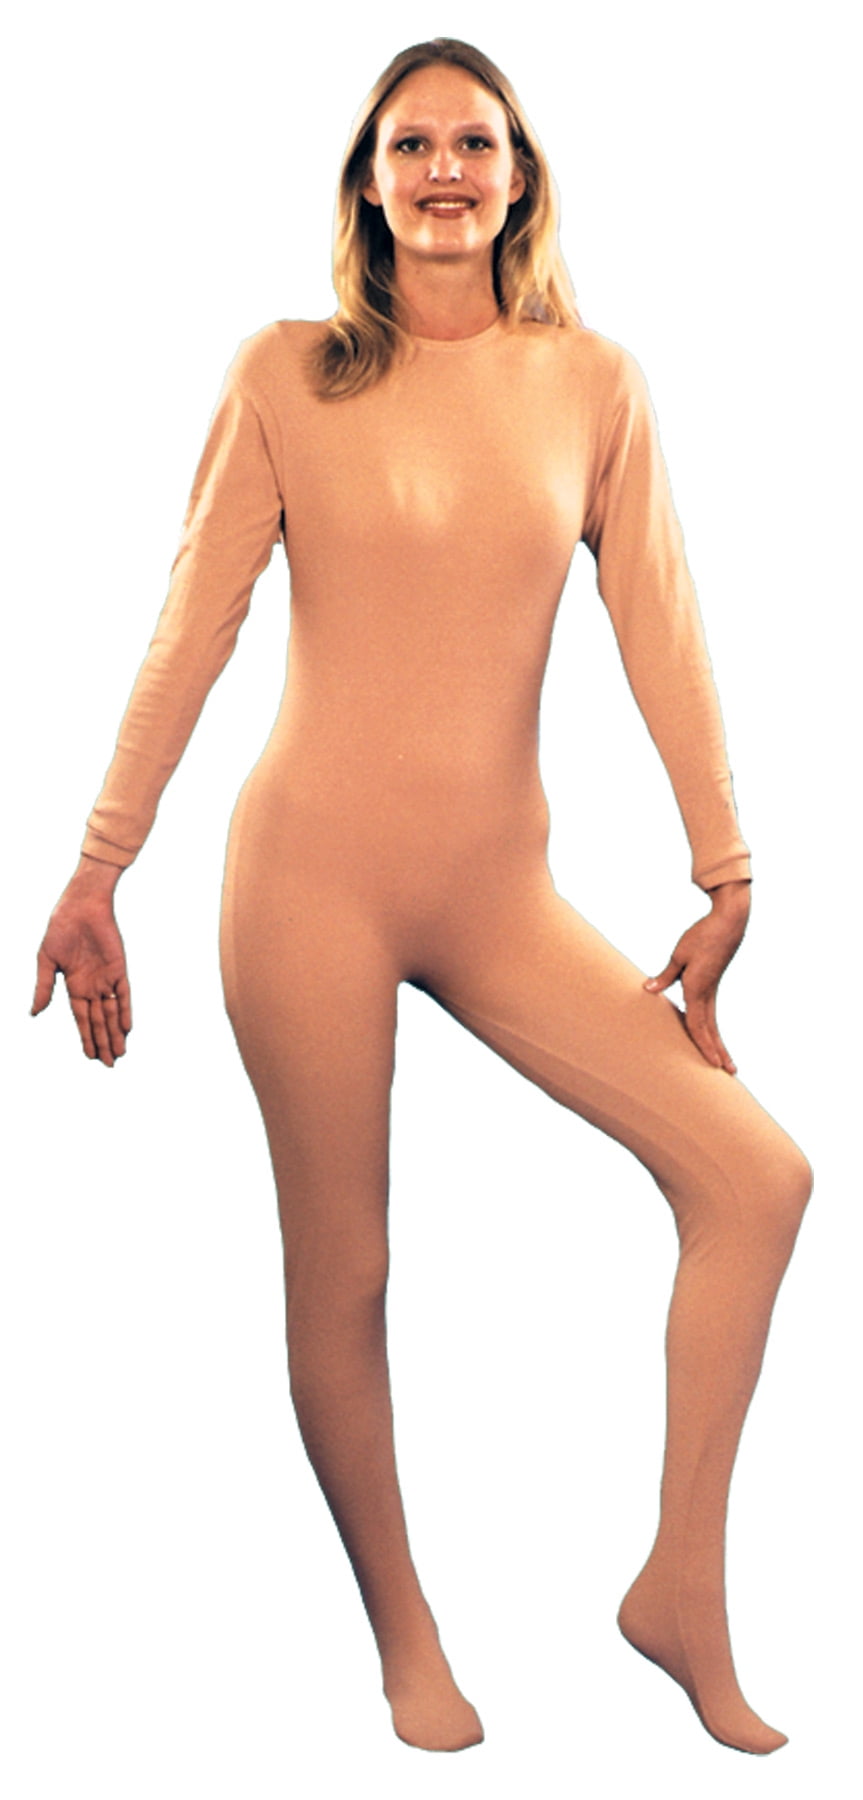 Nude Body Suit Women's Adult Halloween Costume